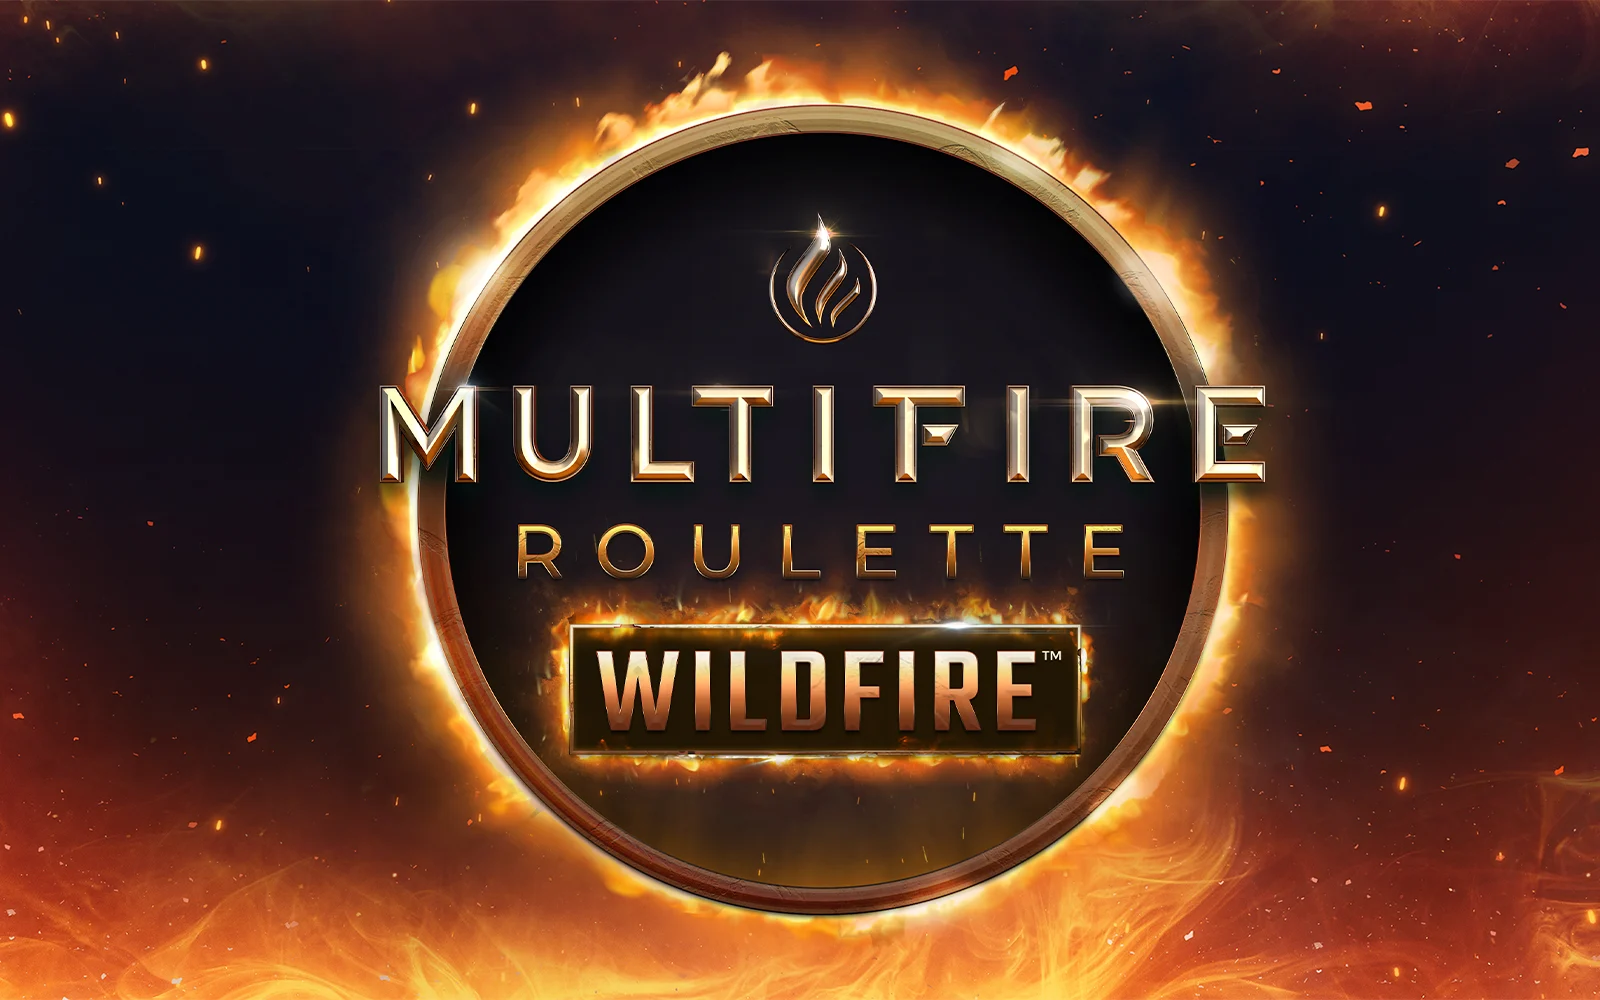 Jouer à Multifire Roulette Wildfire™ sur le casino en ligne Starcasino.be